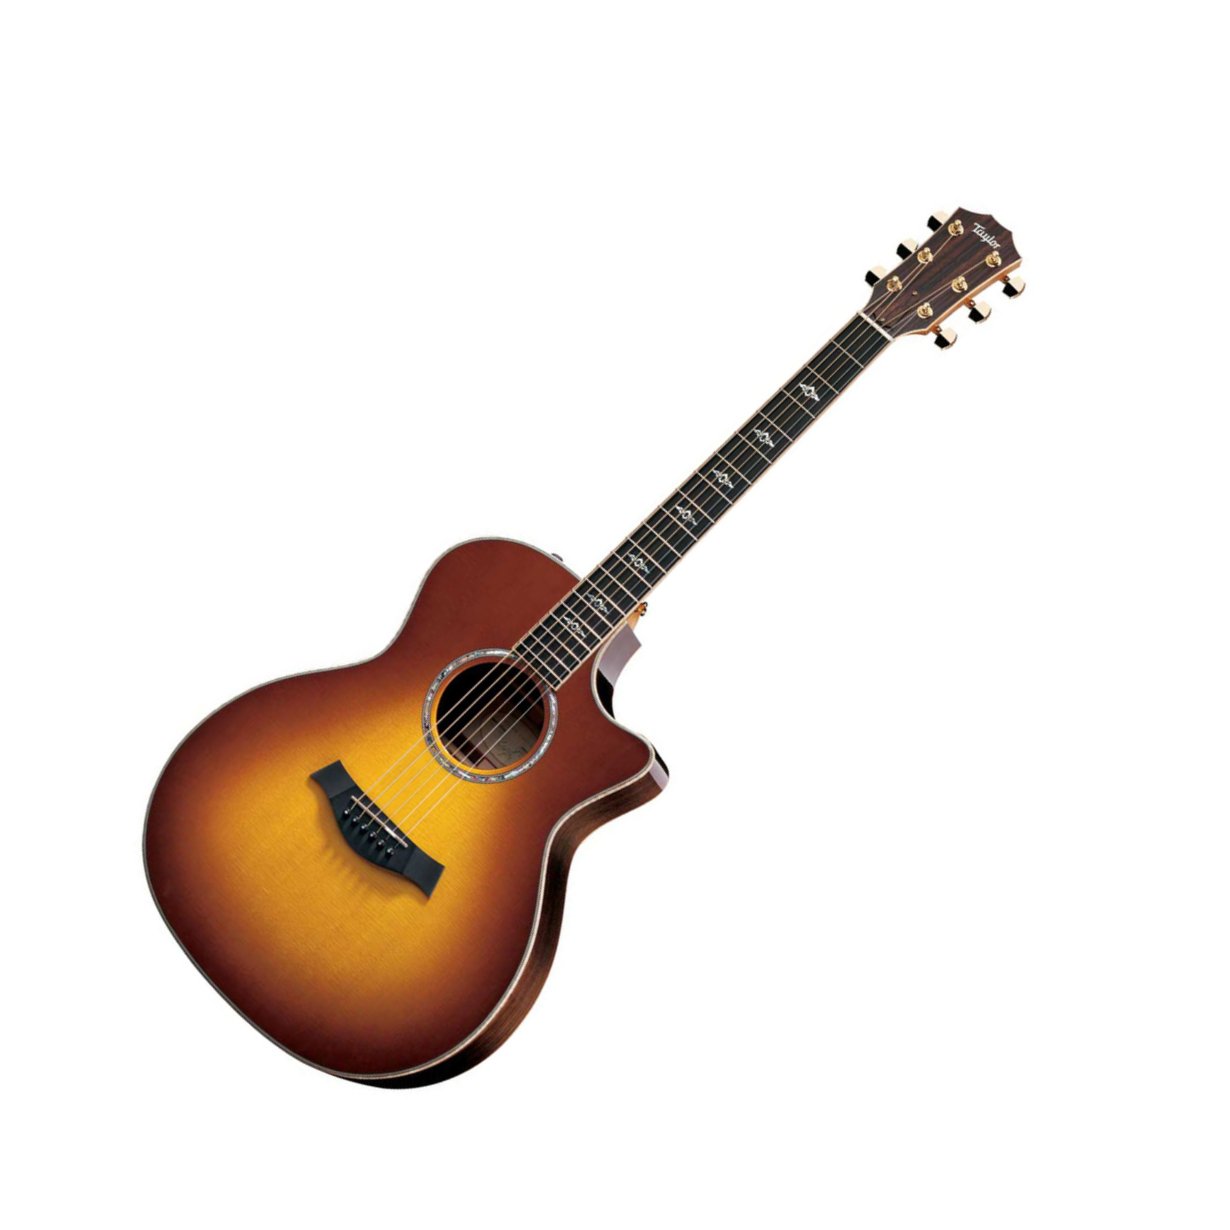 Acoustic Cutaway Guitar